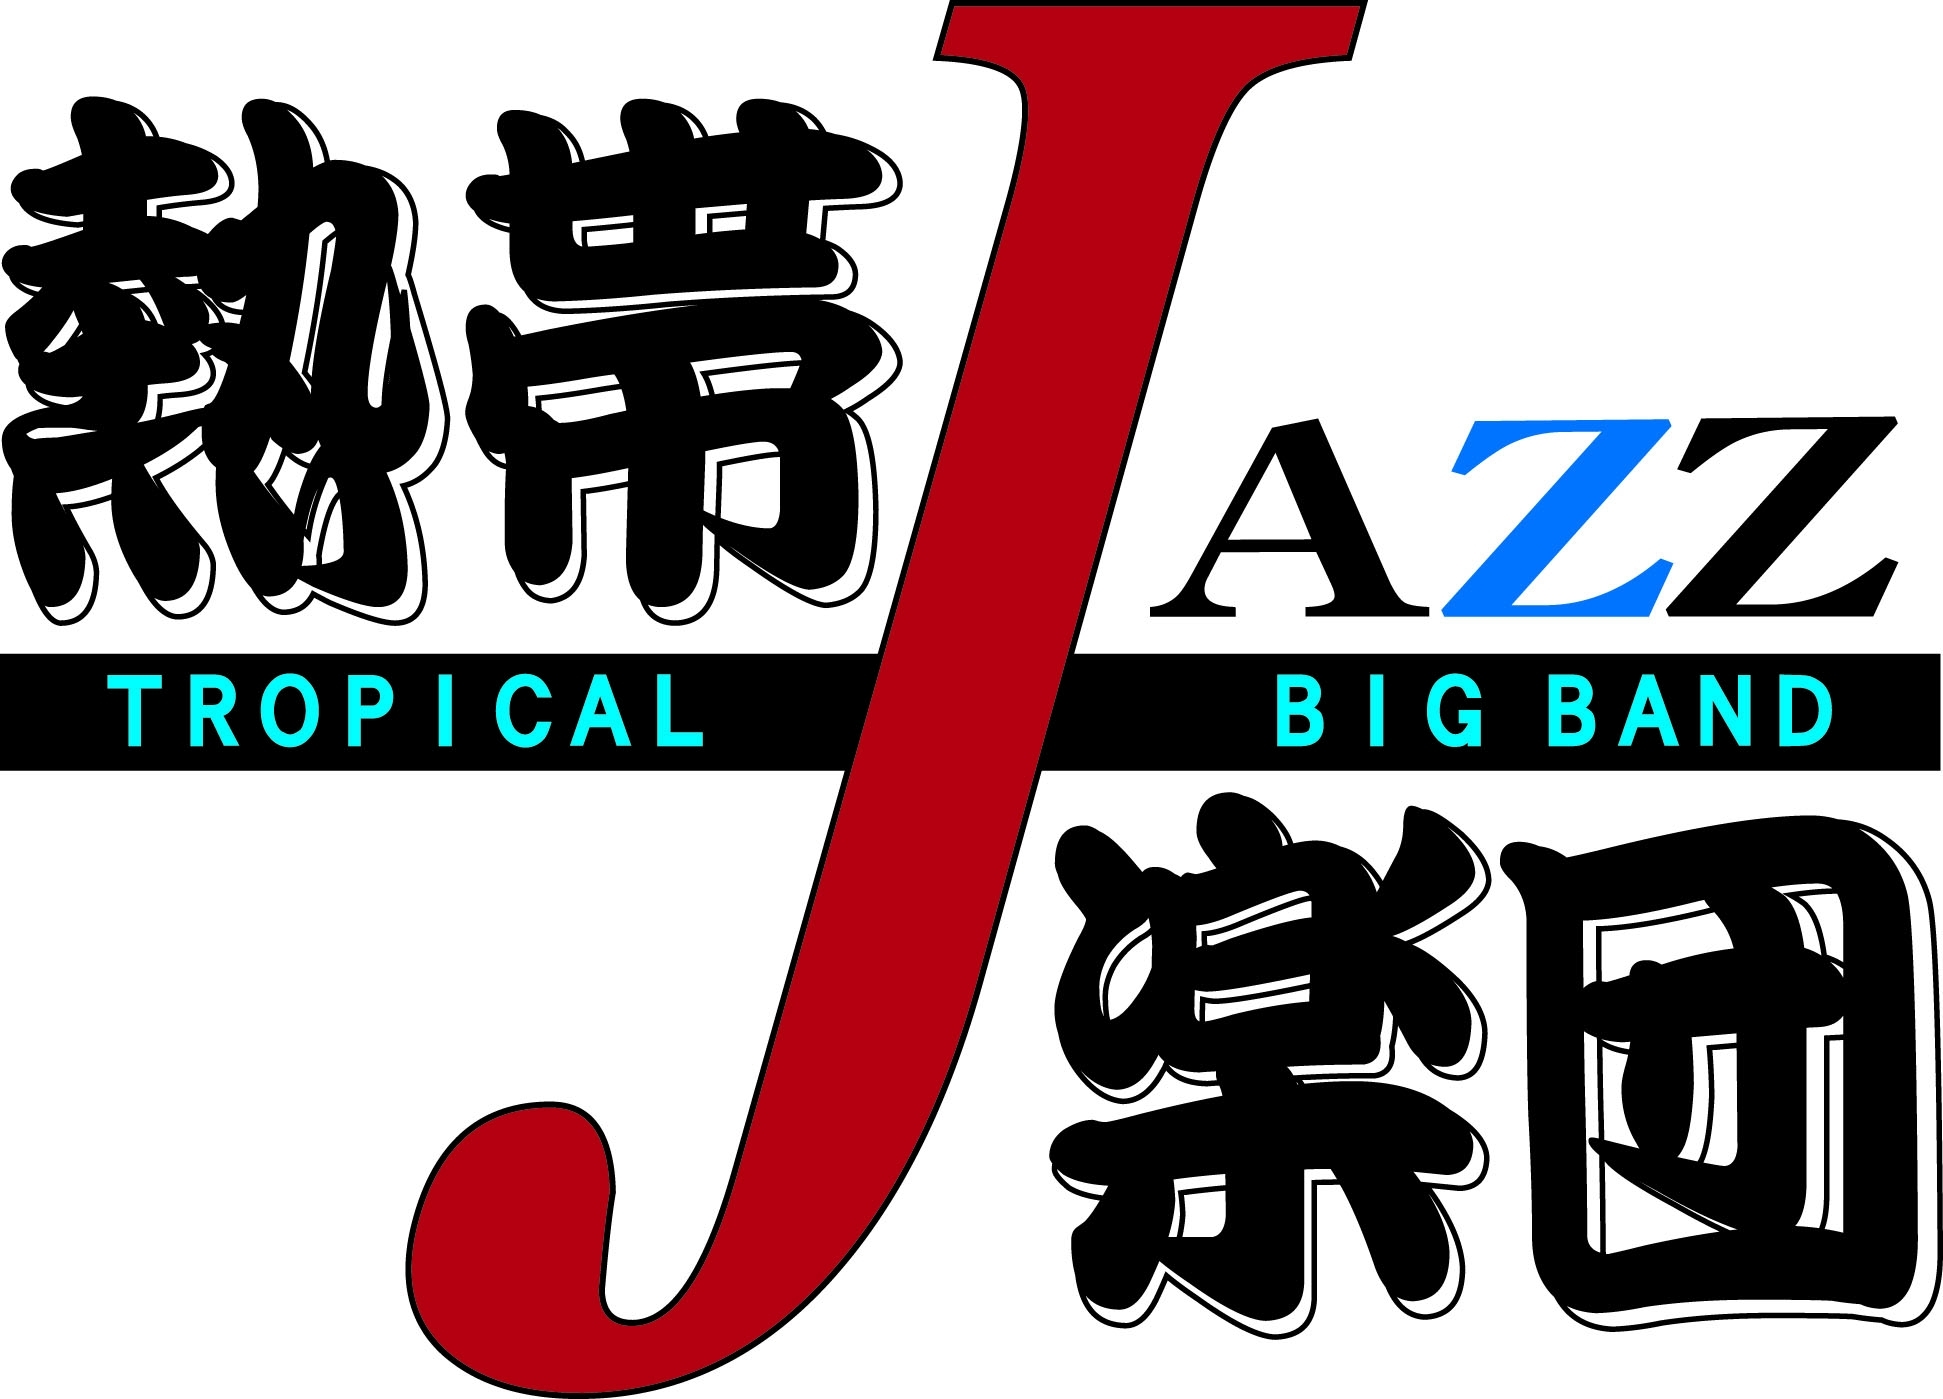 熱帯JAZZ楽団25周年記念アルバムプロジェクト